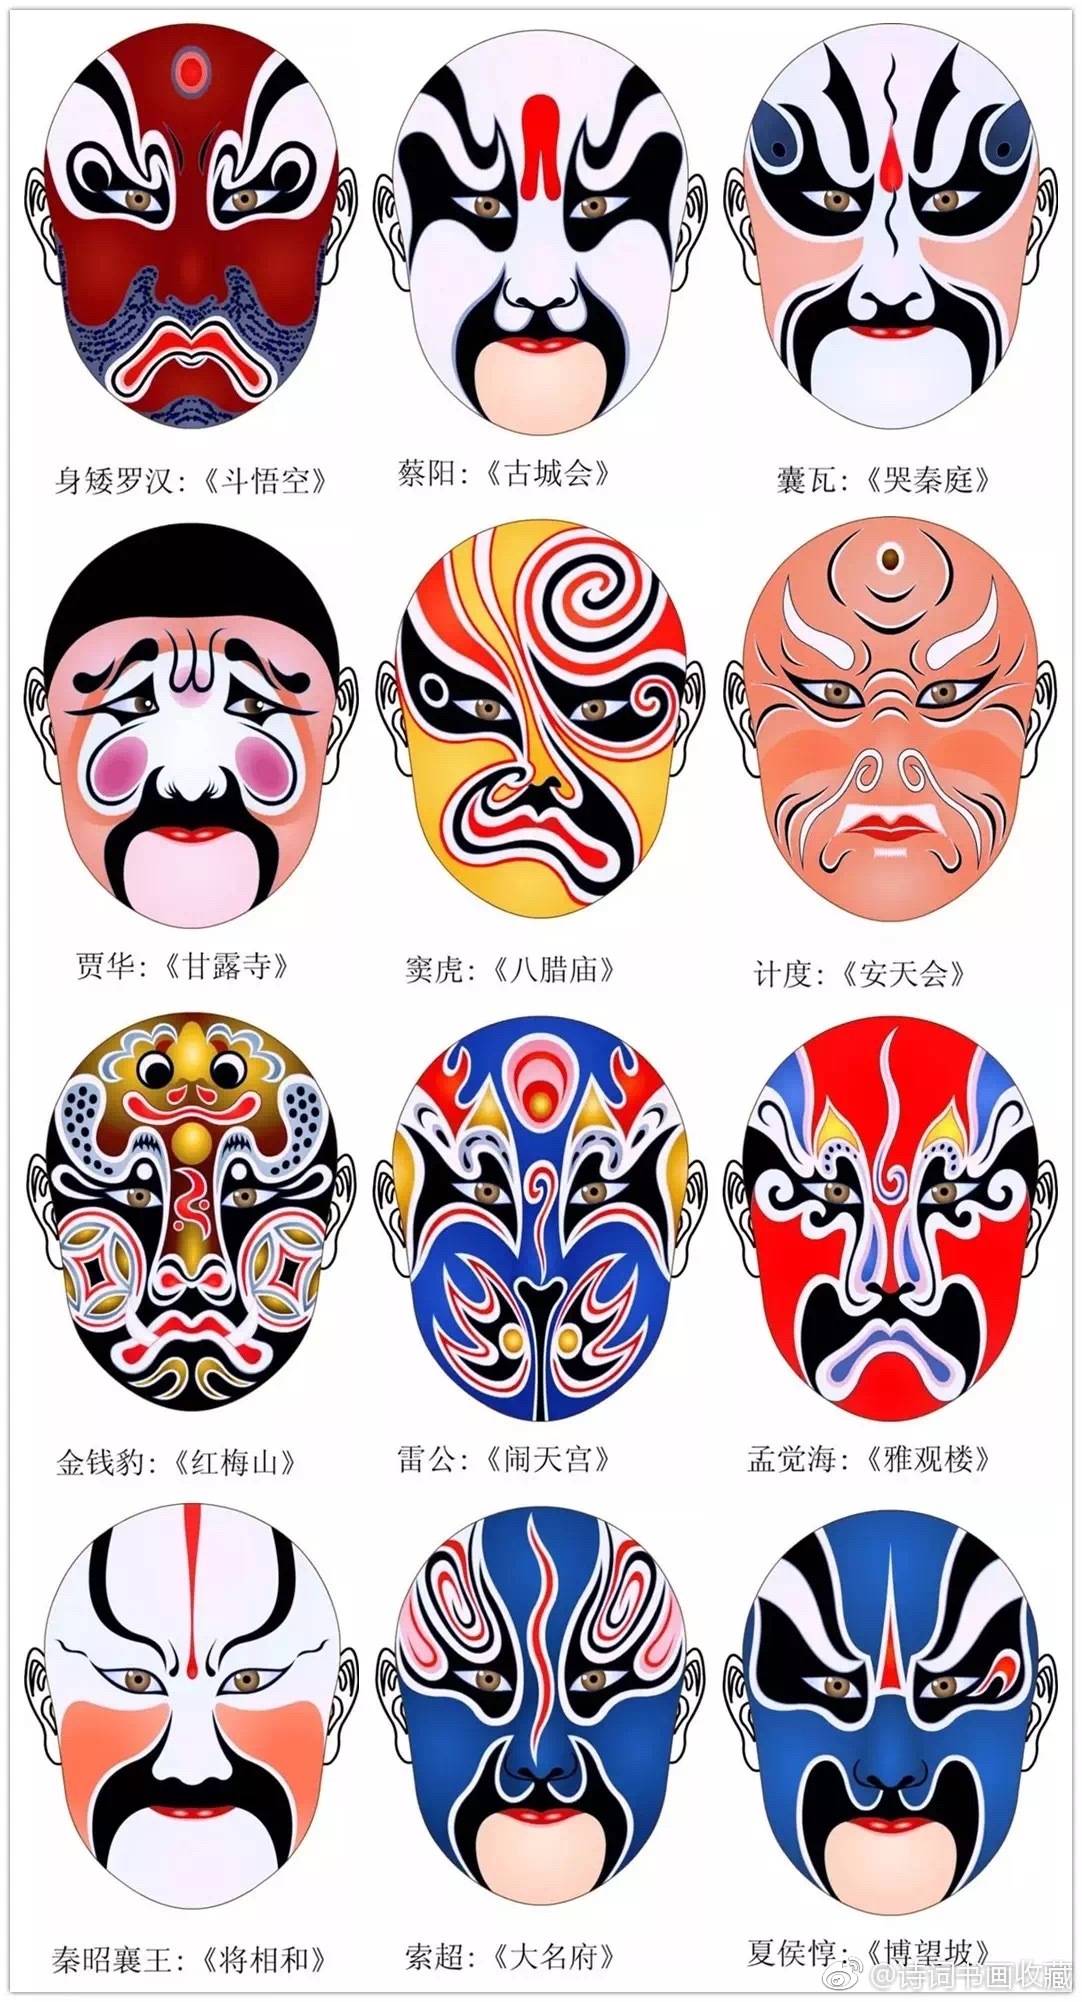 国粹京剧脸谱欣赏一待续京剧脸谱是京剧演员面部化妆造型的一种